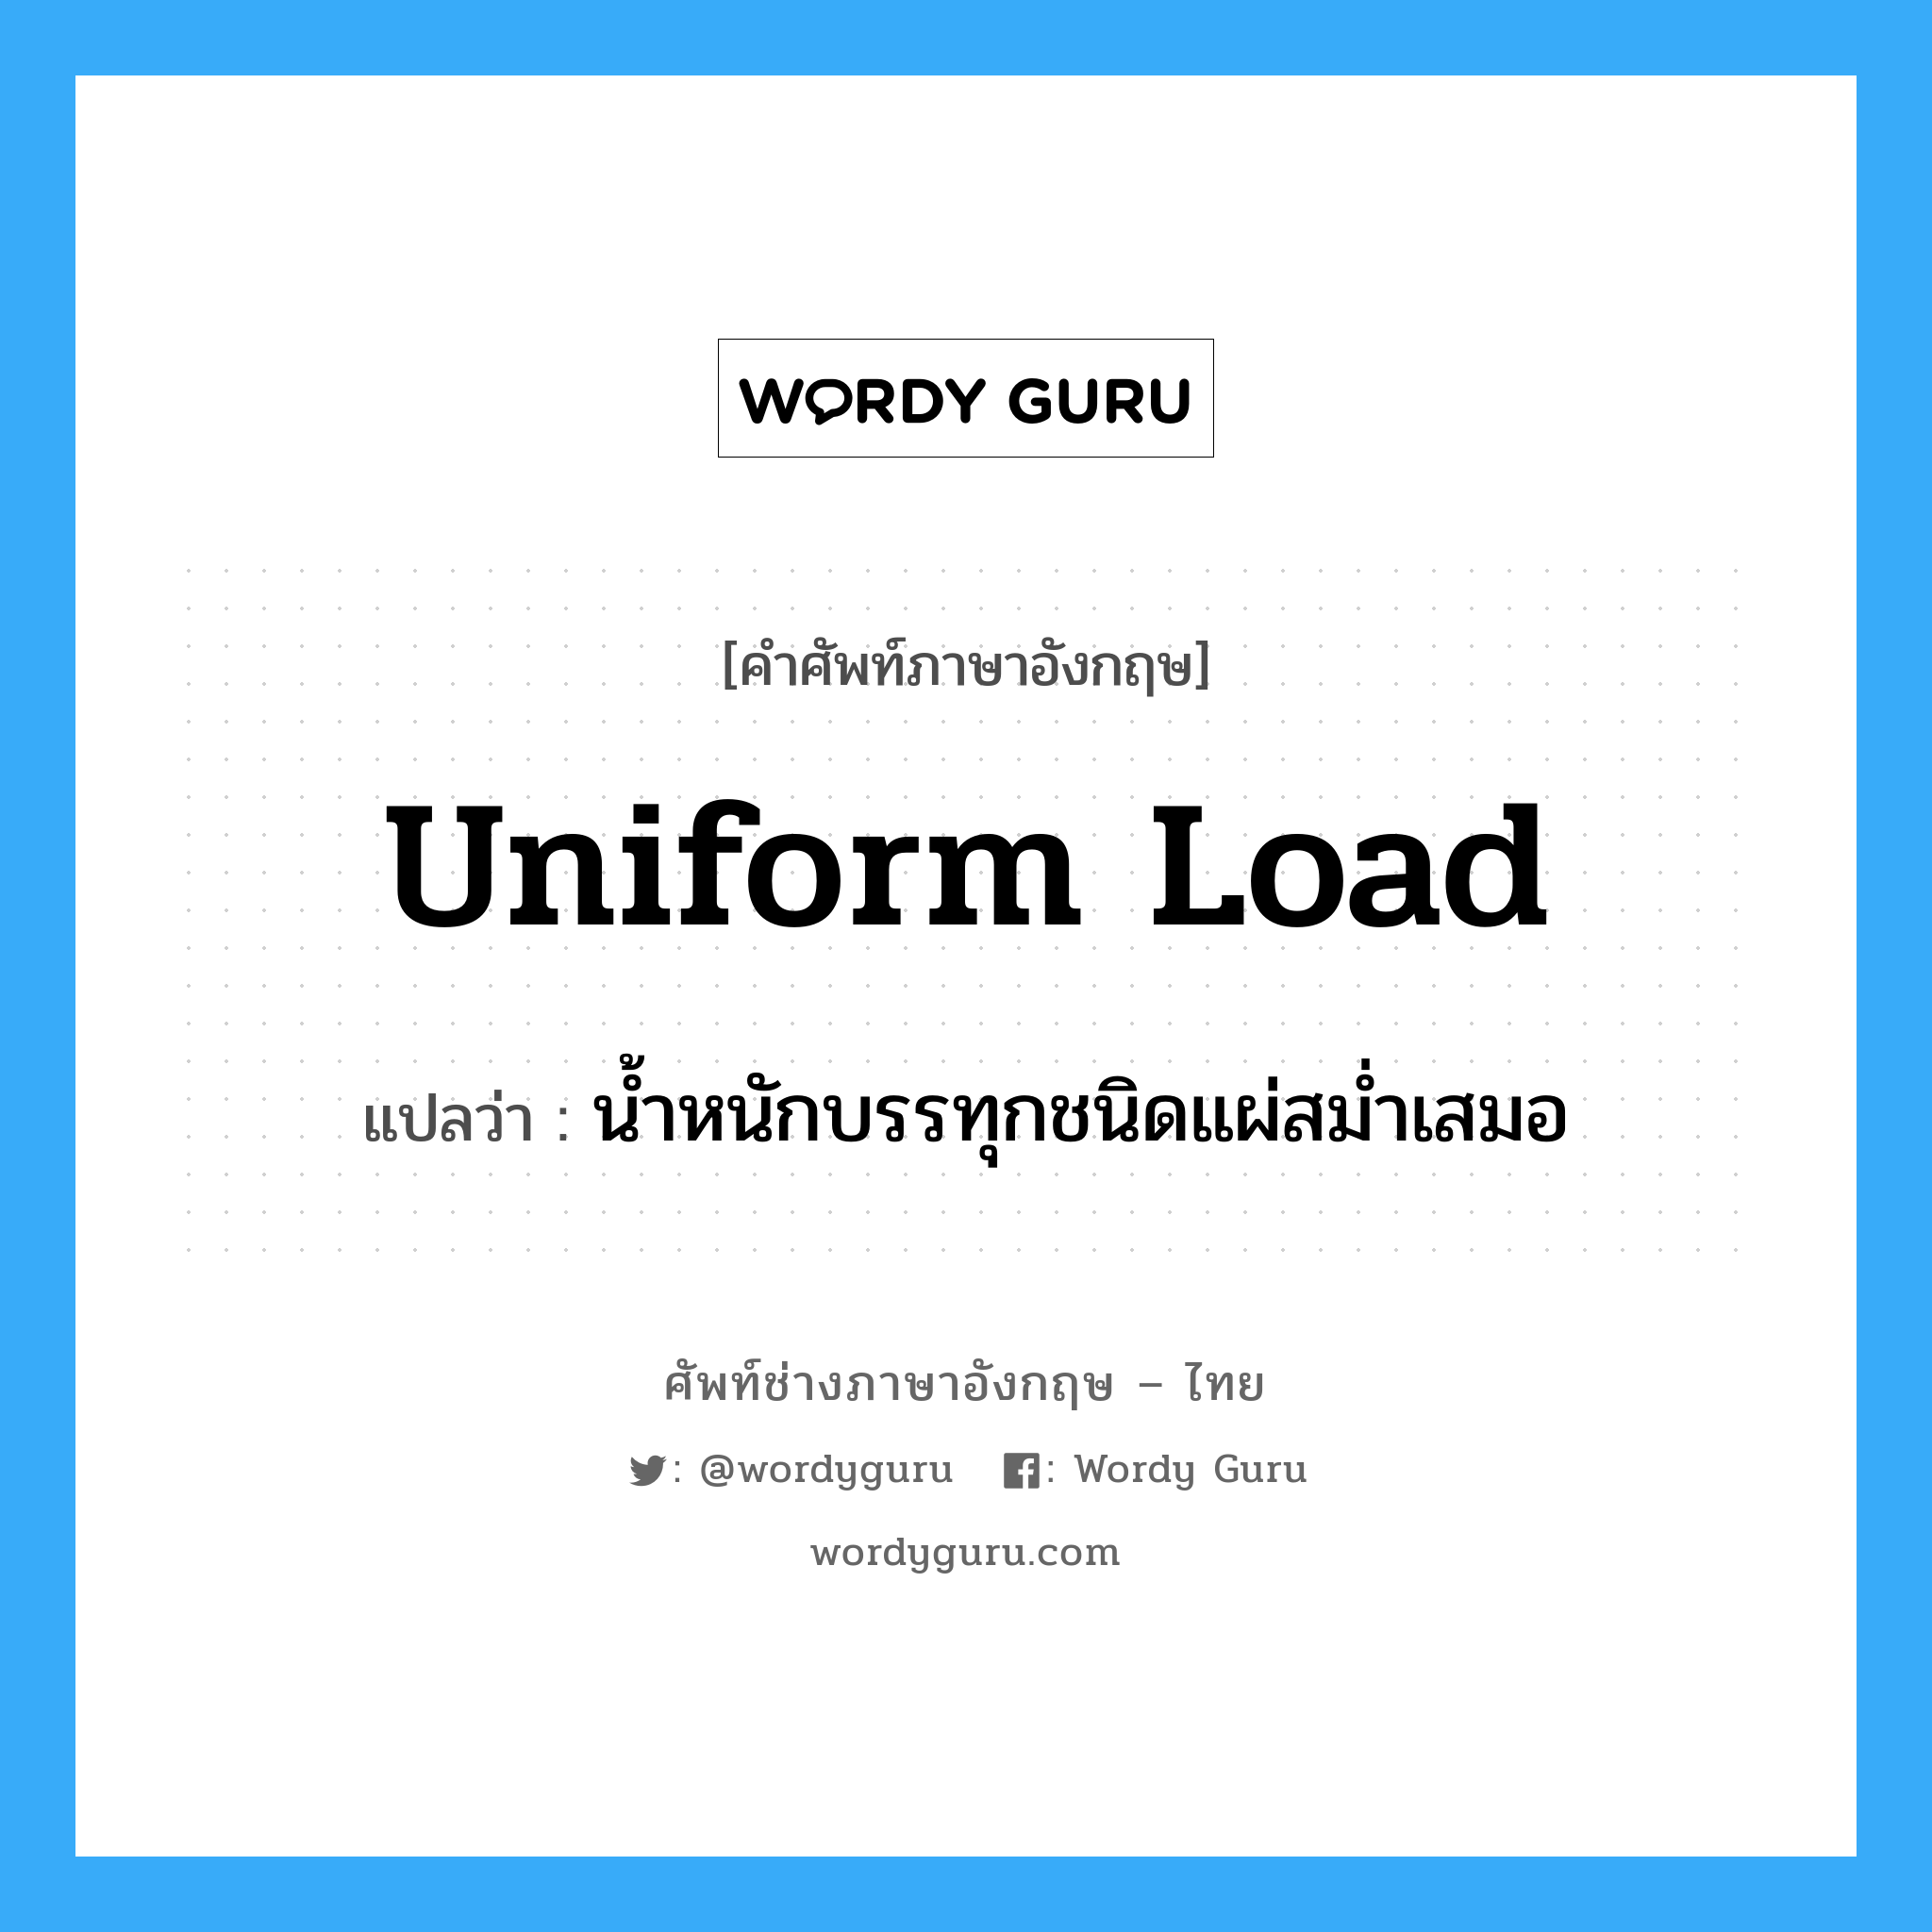 uniform load แปลว่า?, คำศัพท์ช่างภาษาอังกฤษ - ไทย uniform load คำศัพท์ภาษาอังกฤษ uniform load แปลว่า น้ำหนักบรรทุกชนิดแผ่สม่ำเสมอ